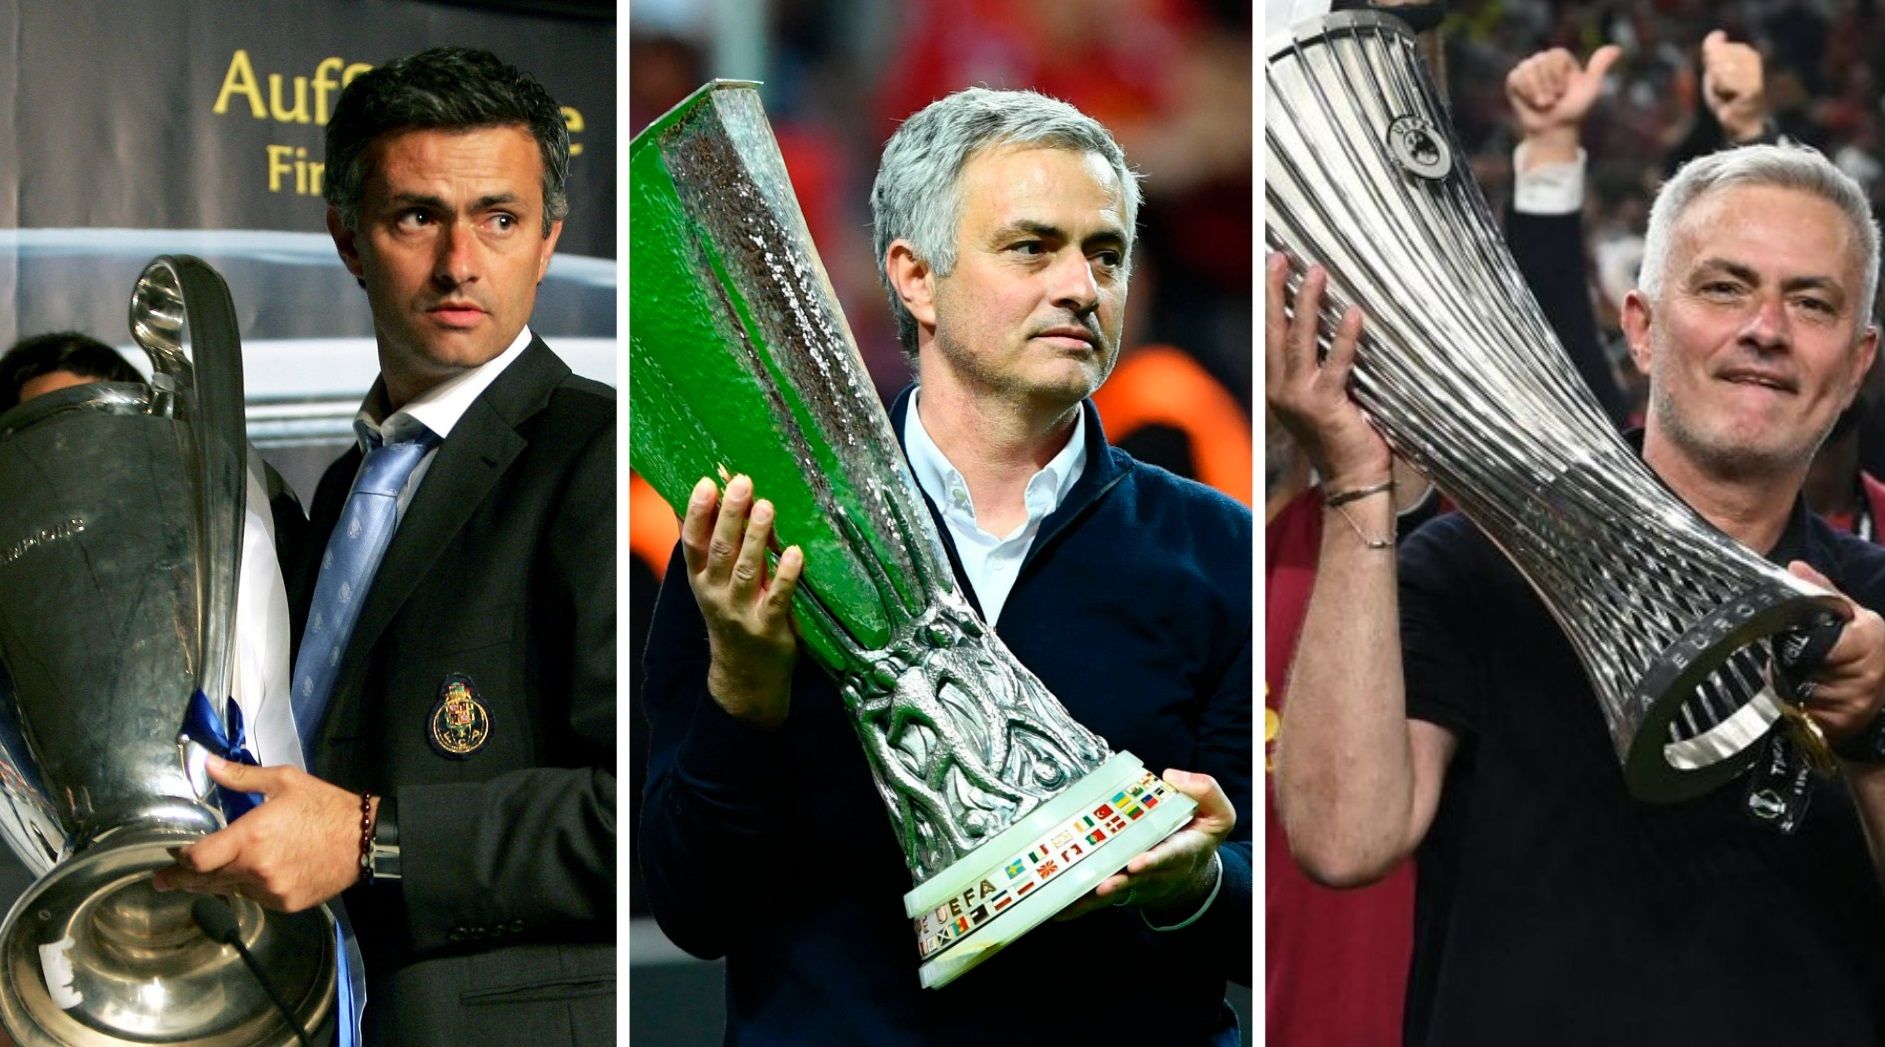 Какой тренер выиграл. Тренеры выигравшие Лигу Европы Инглиш. Торино выигрывает трофей.